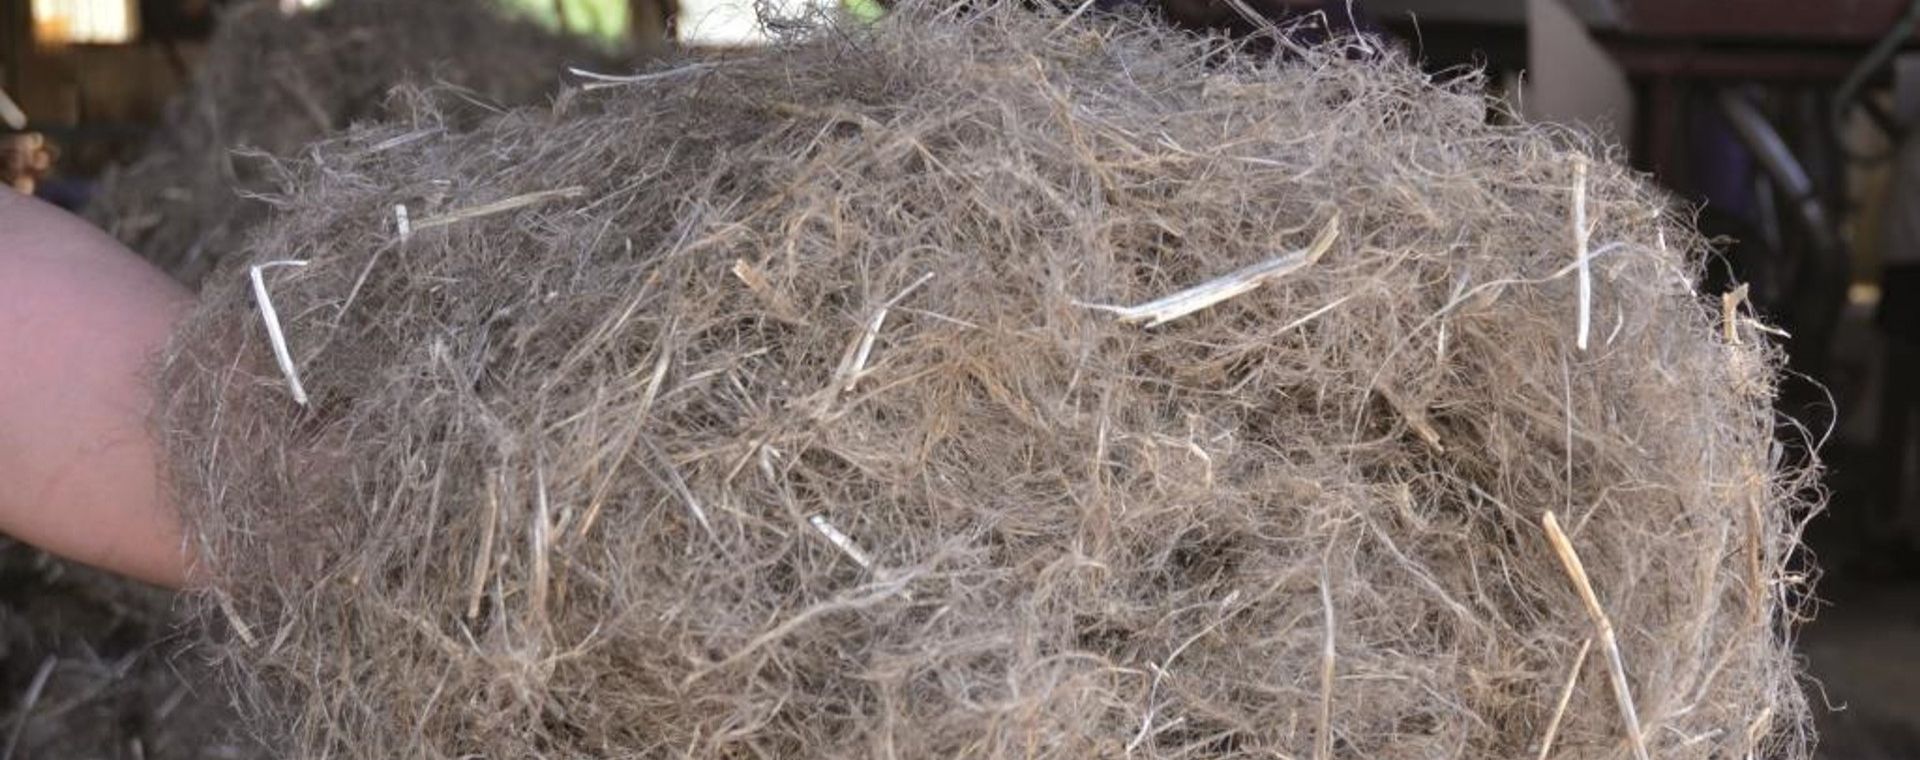 Fibres issues du chanvre utilisées dans l'isolation thermique des habitations, laines de chanvre